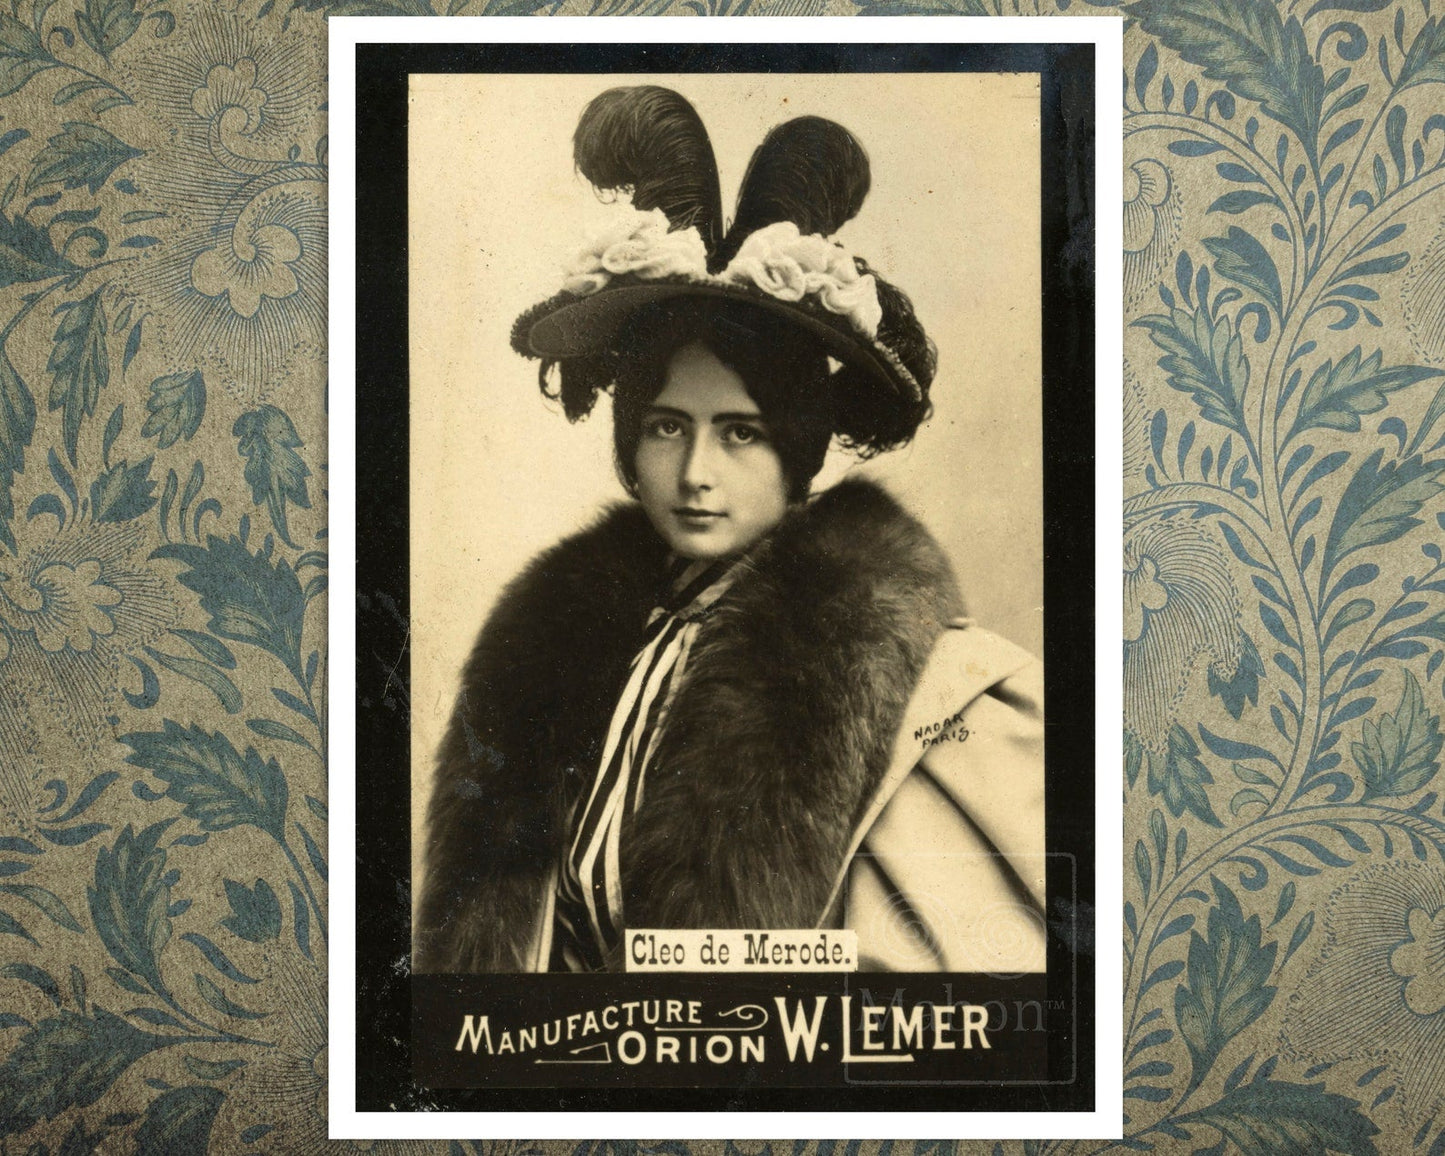 Vintage Photo Advertisement for Orion W. Lemer "Cléo de Mérode" by Paul Nadar (c.1894) - Mabon Gallery